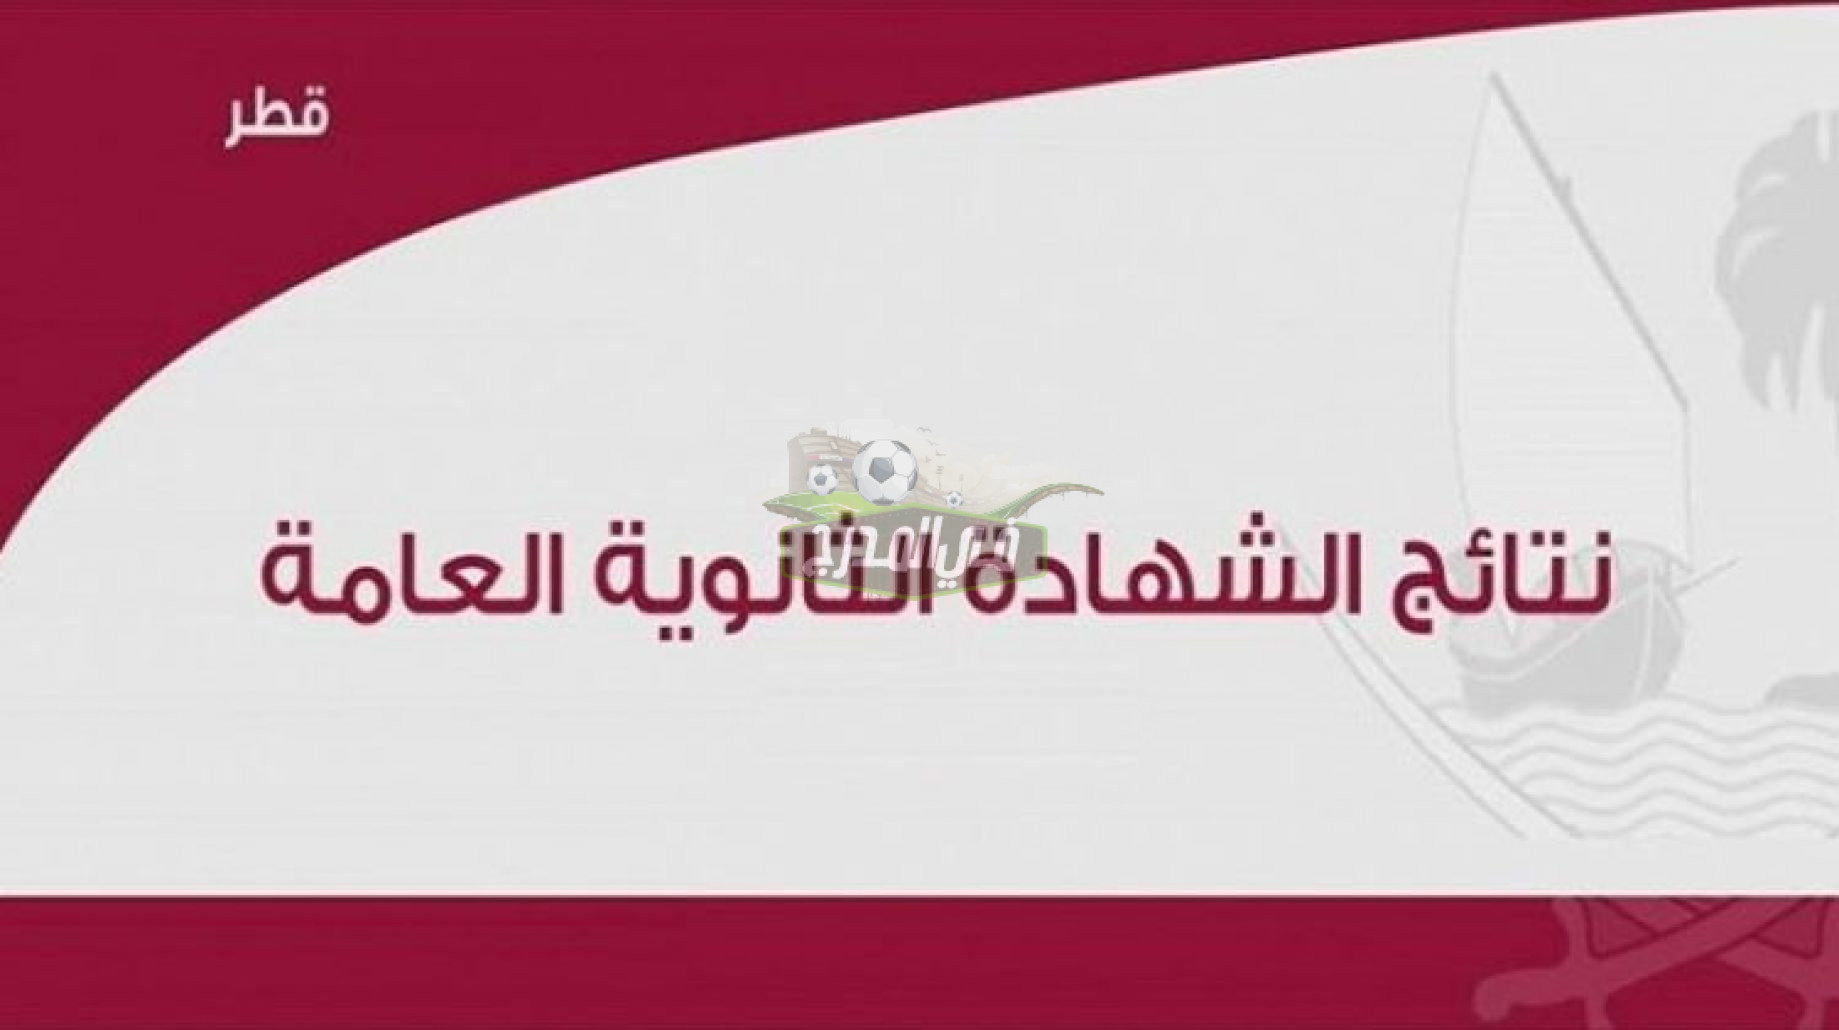 نتيجة الثانوية العامة في قطر 2021-2022 عن الفصل الدراسي الأول عبر بوابة خدمات الجمهور